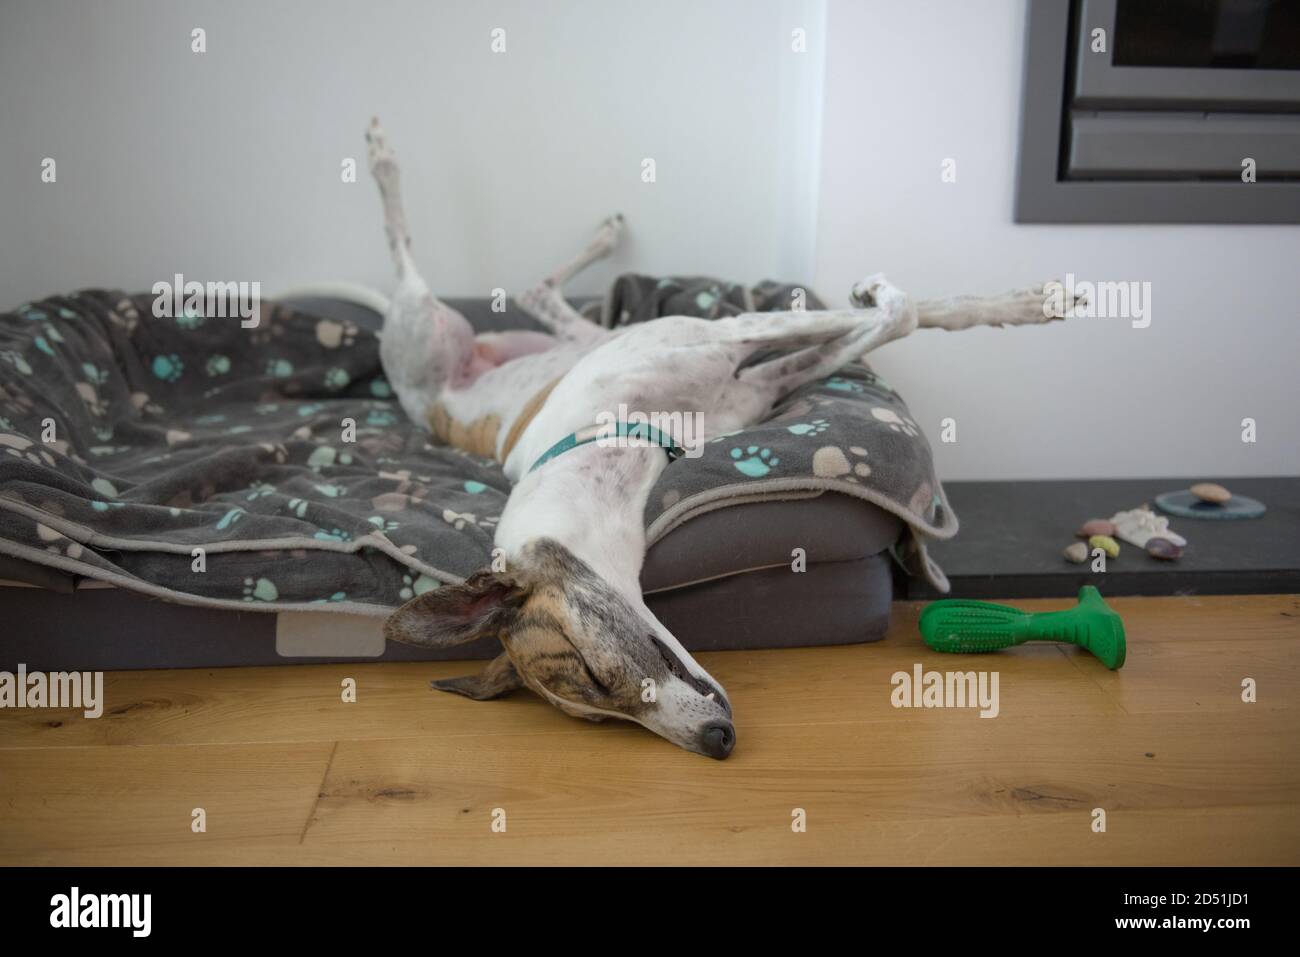 Rapide endormi, ce grand chien greyhound prend une position inhabituelle, avec les jambes arrière dans l'air, les jambes avant croisées, le nez sur le sol. Lit confortable pour chiens Banque D'Images